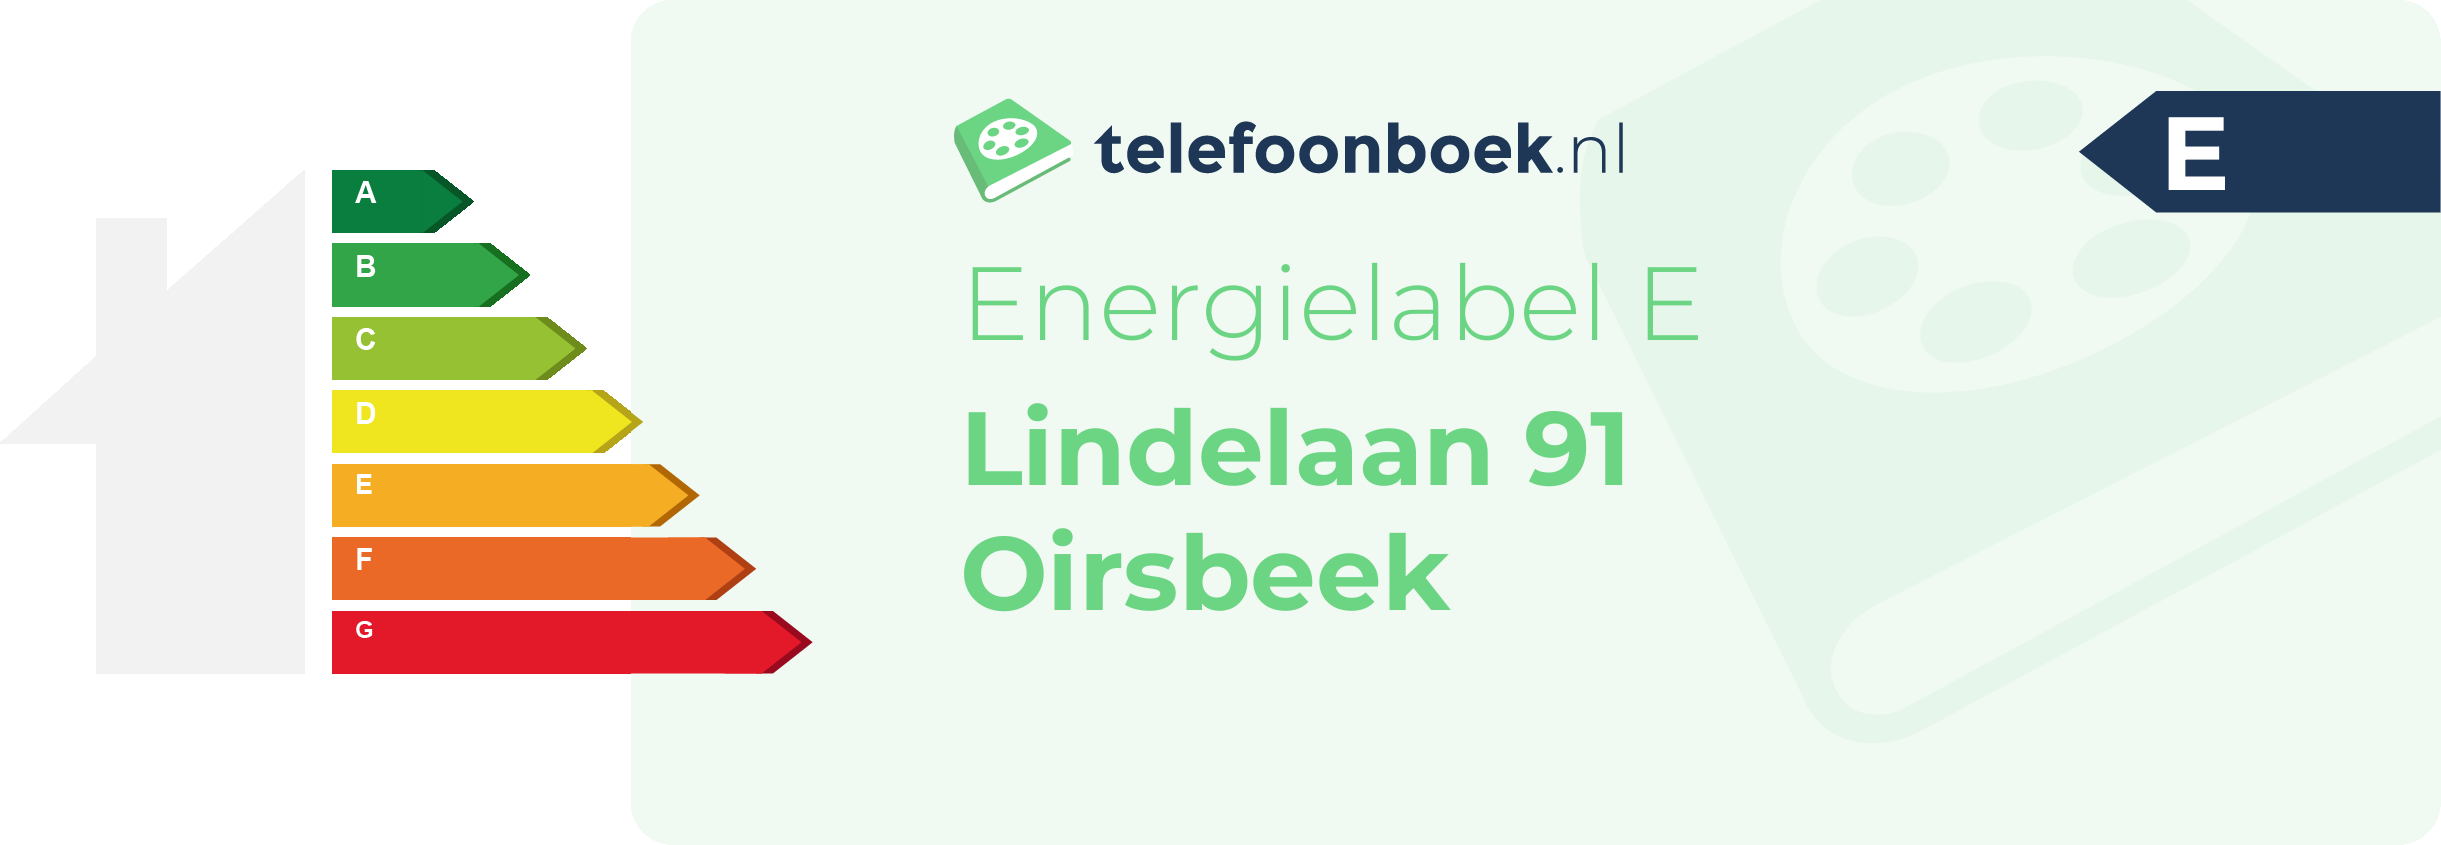 Energielabel Lindelaan 91 Oirsbeek